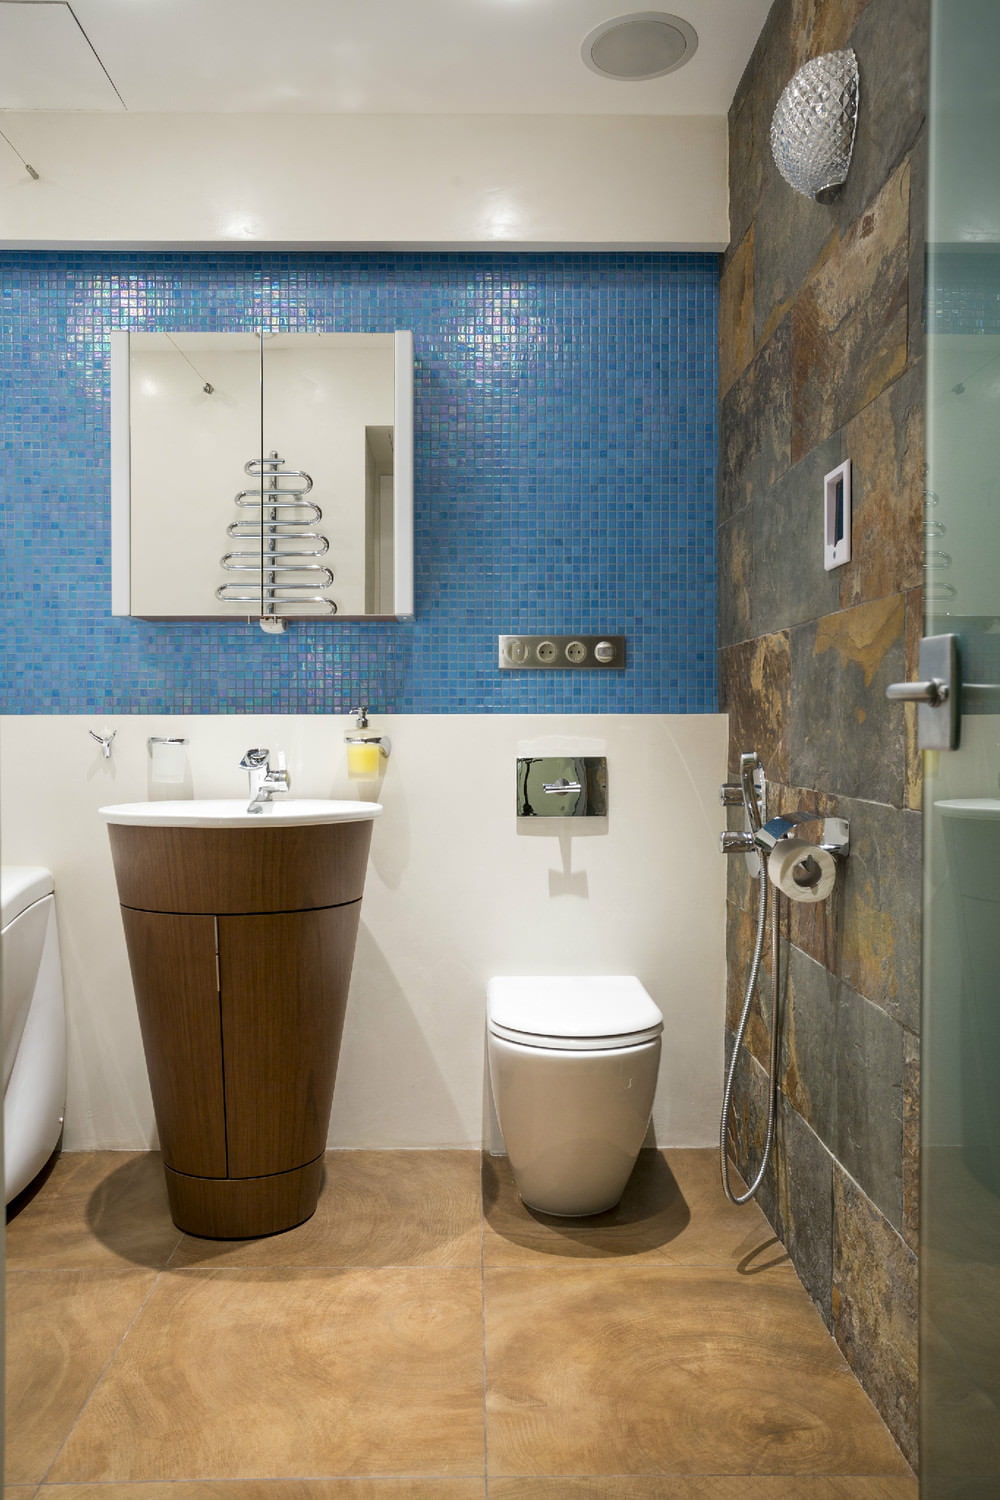 Badezimmer im Design einer Zweizimmerwohnung von 43 qm. m.